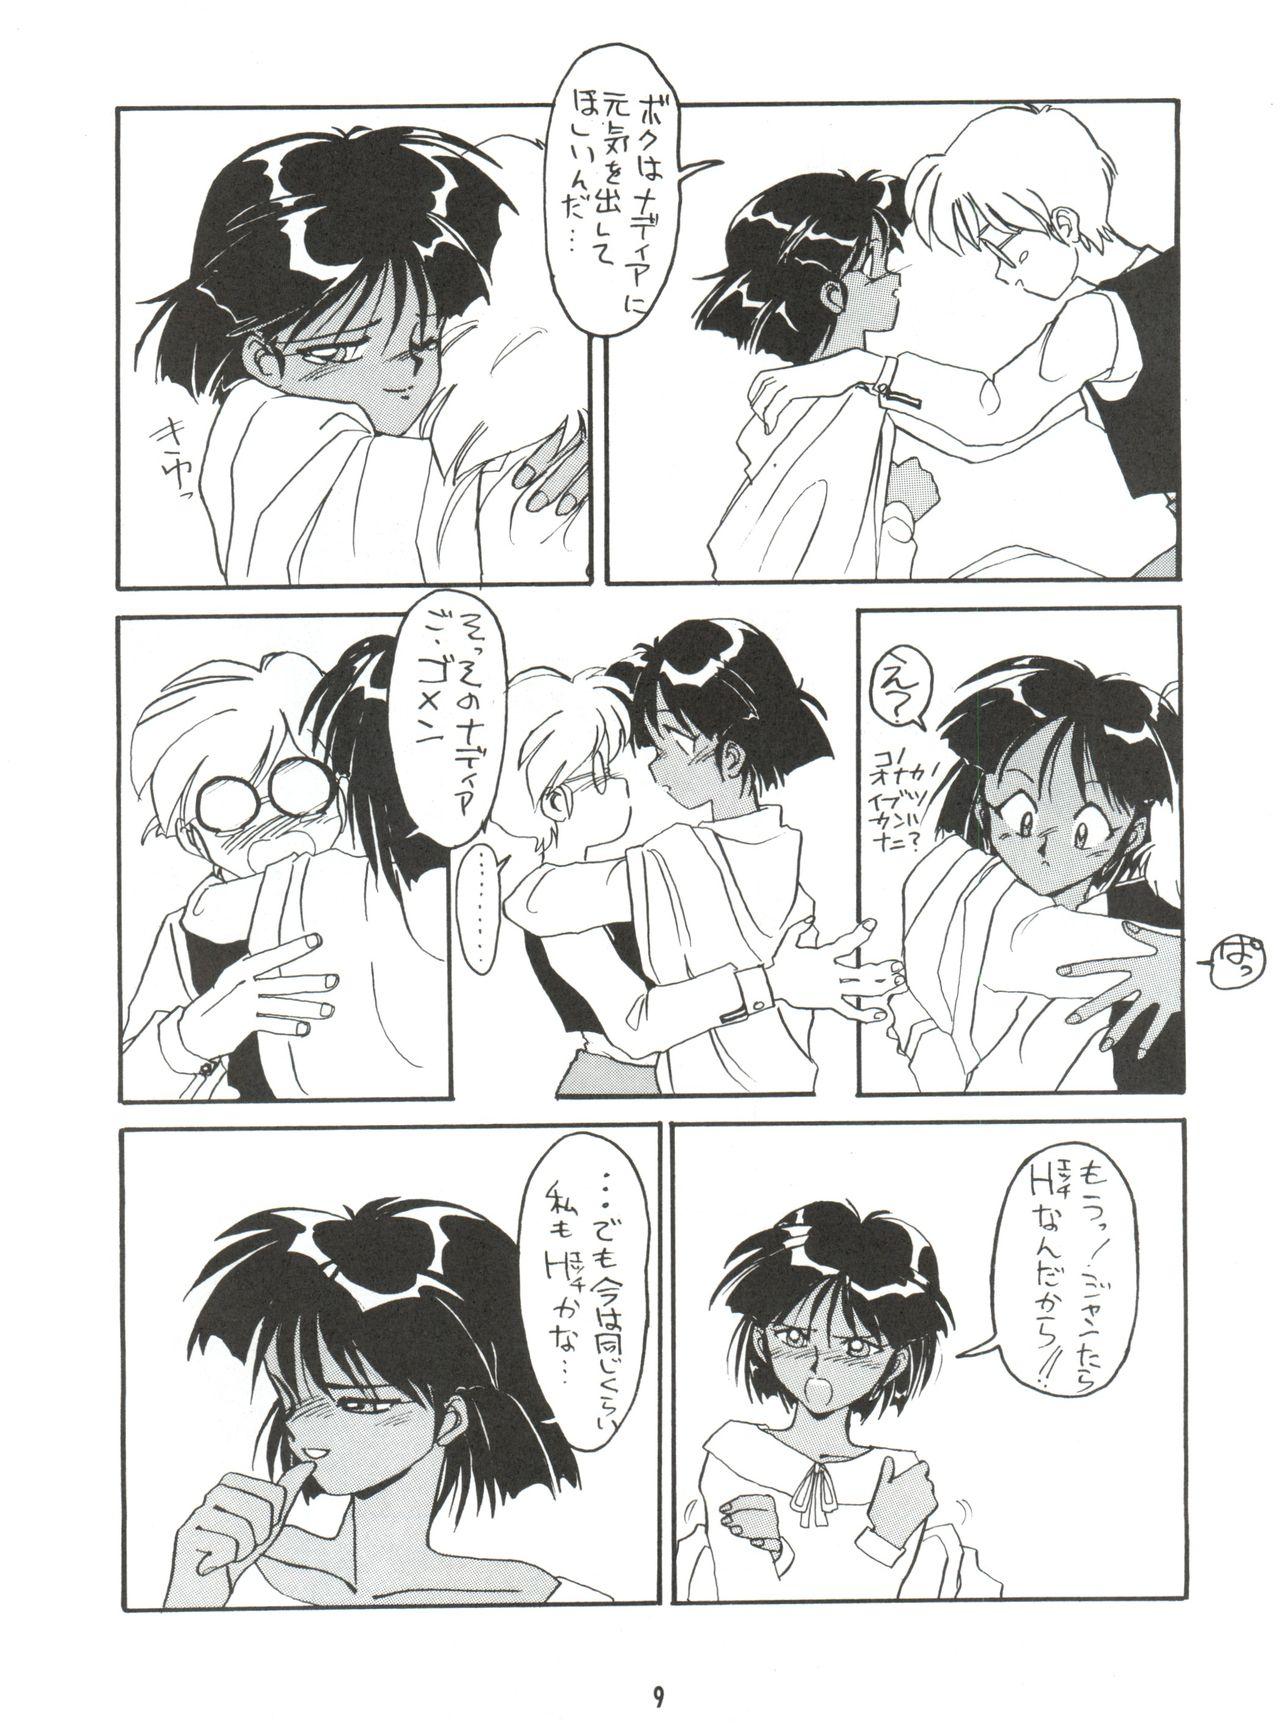 Pica Hitotsubu no Umi 3 - Fushigi no umi no nadia Glamour - Page 9